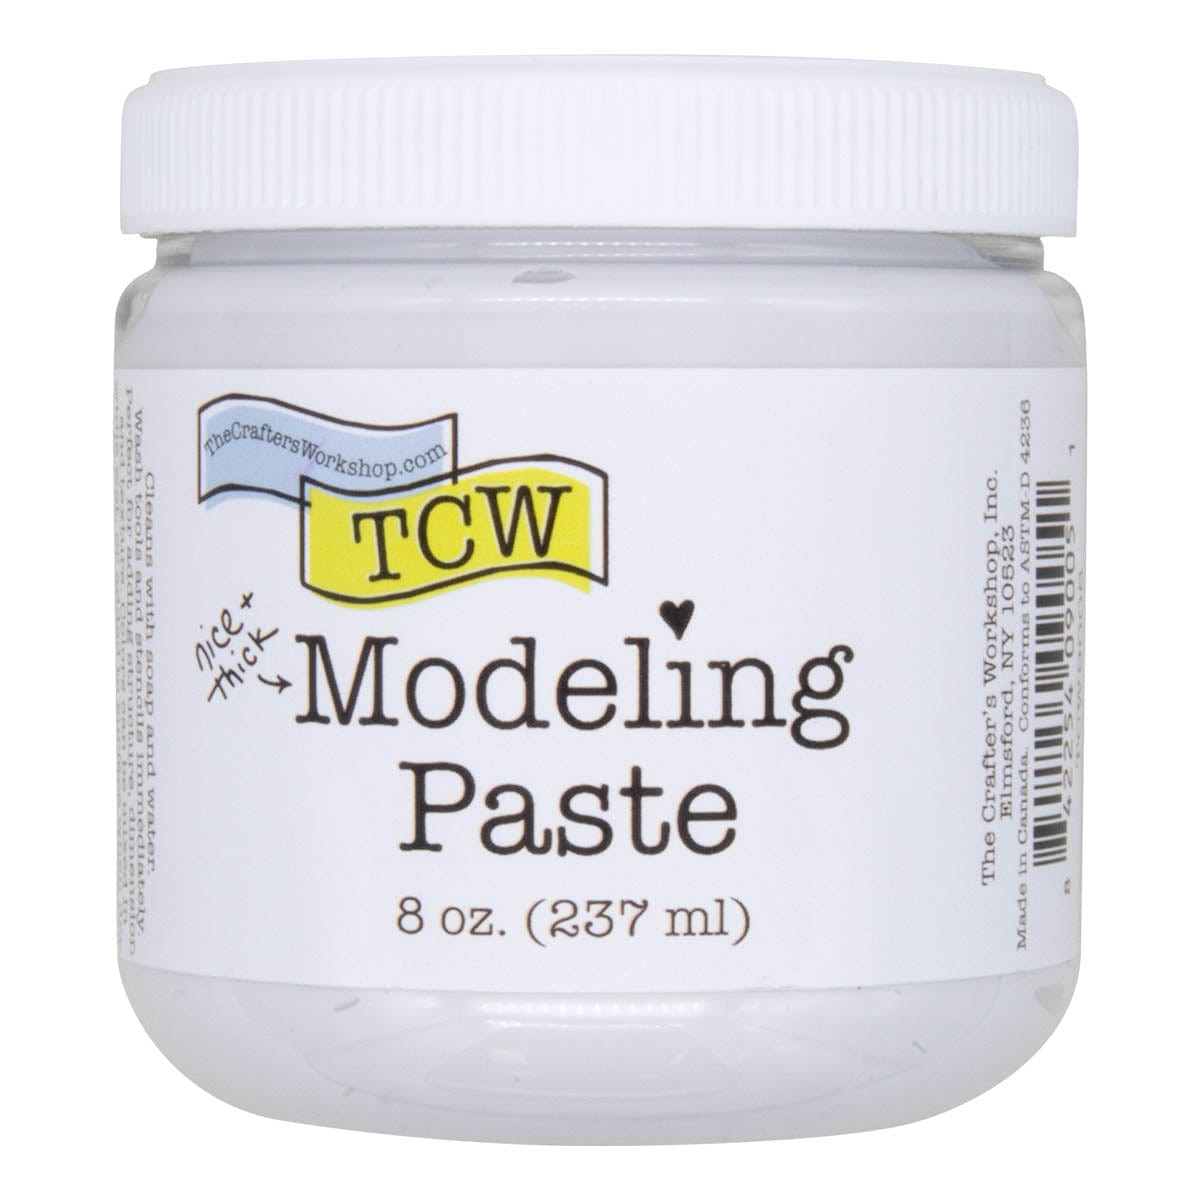 Crafter's Workshop Modeling Paste 8oz White